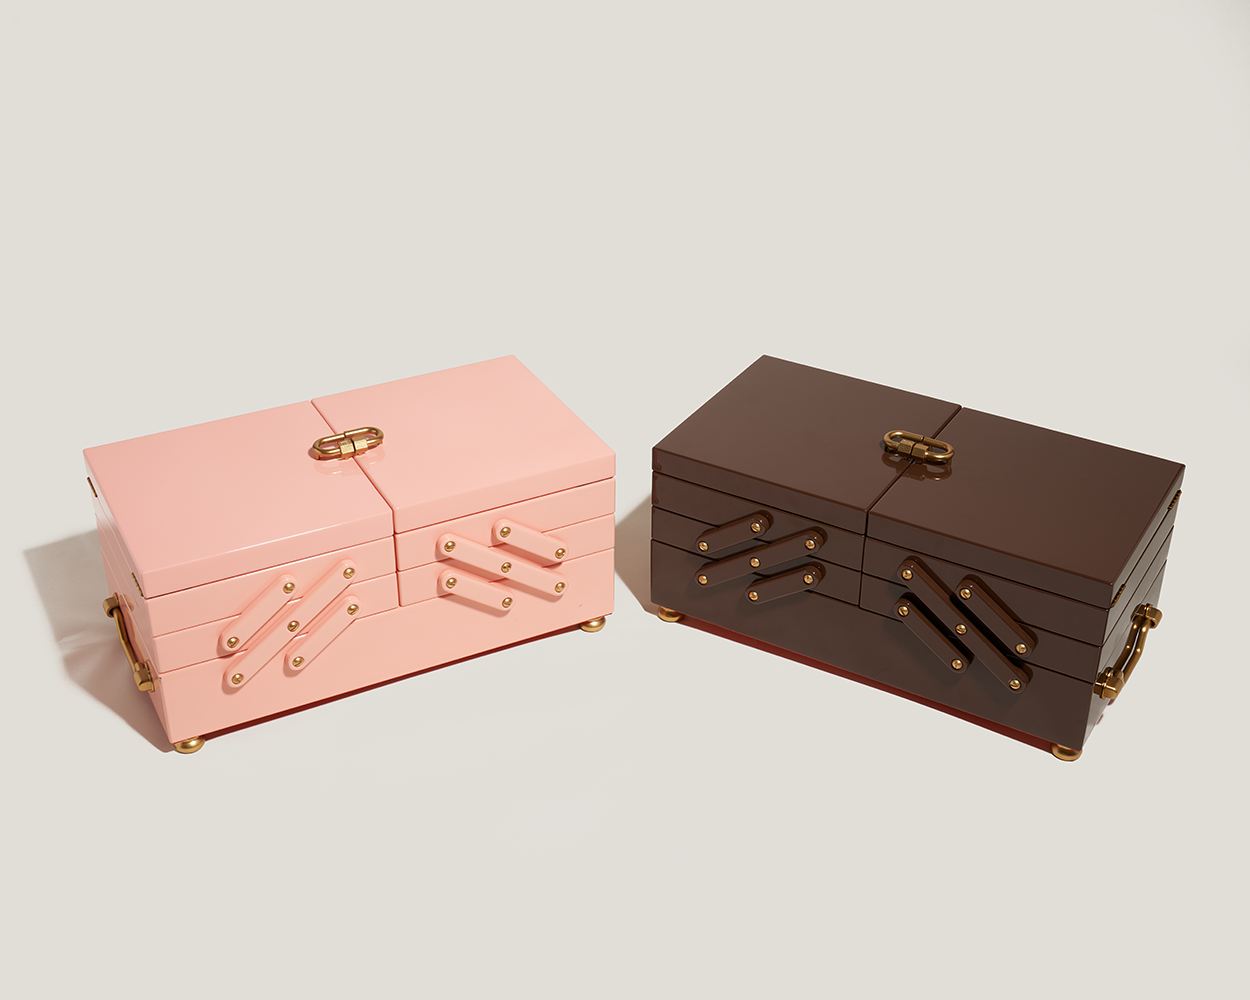 Pink jewelry box alongside wooden jewelry box